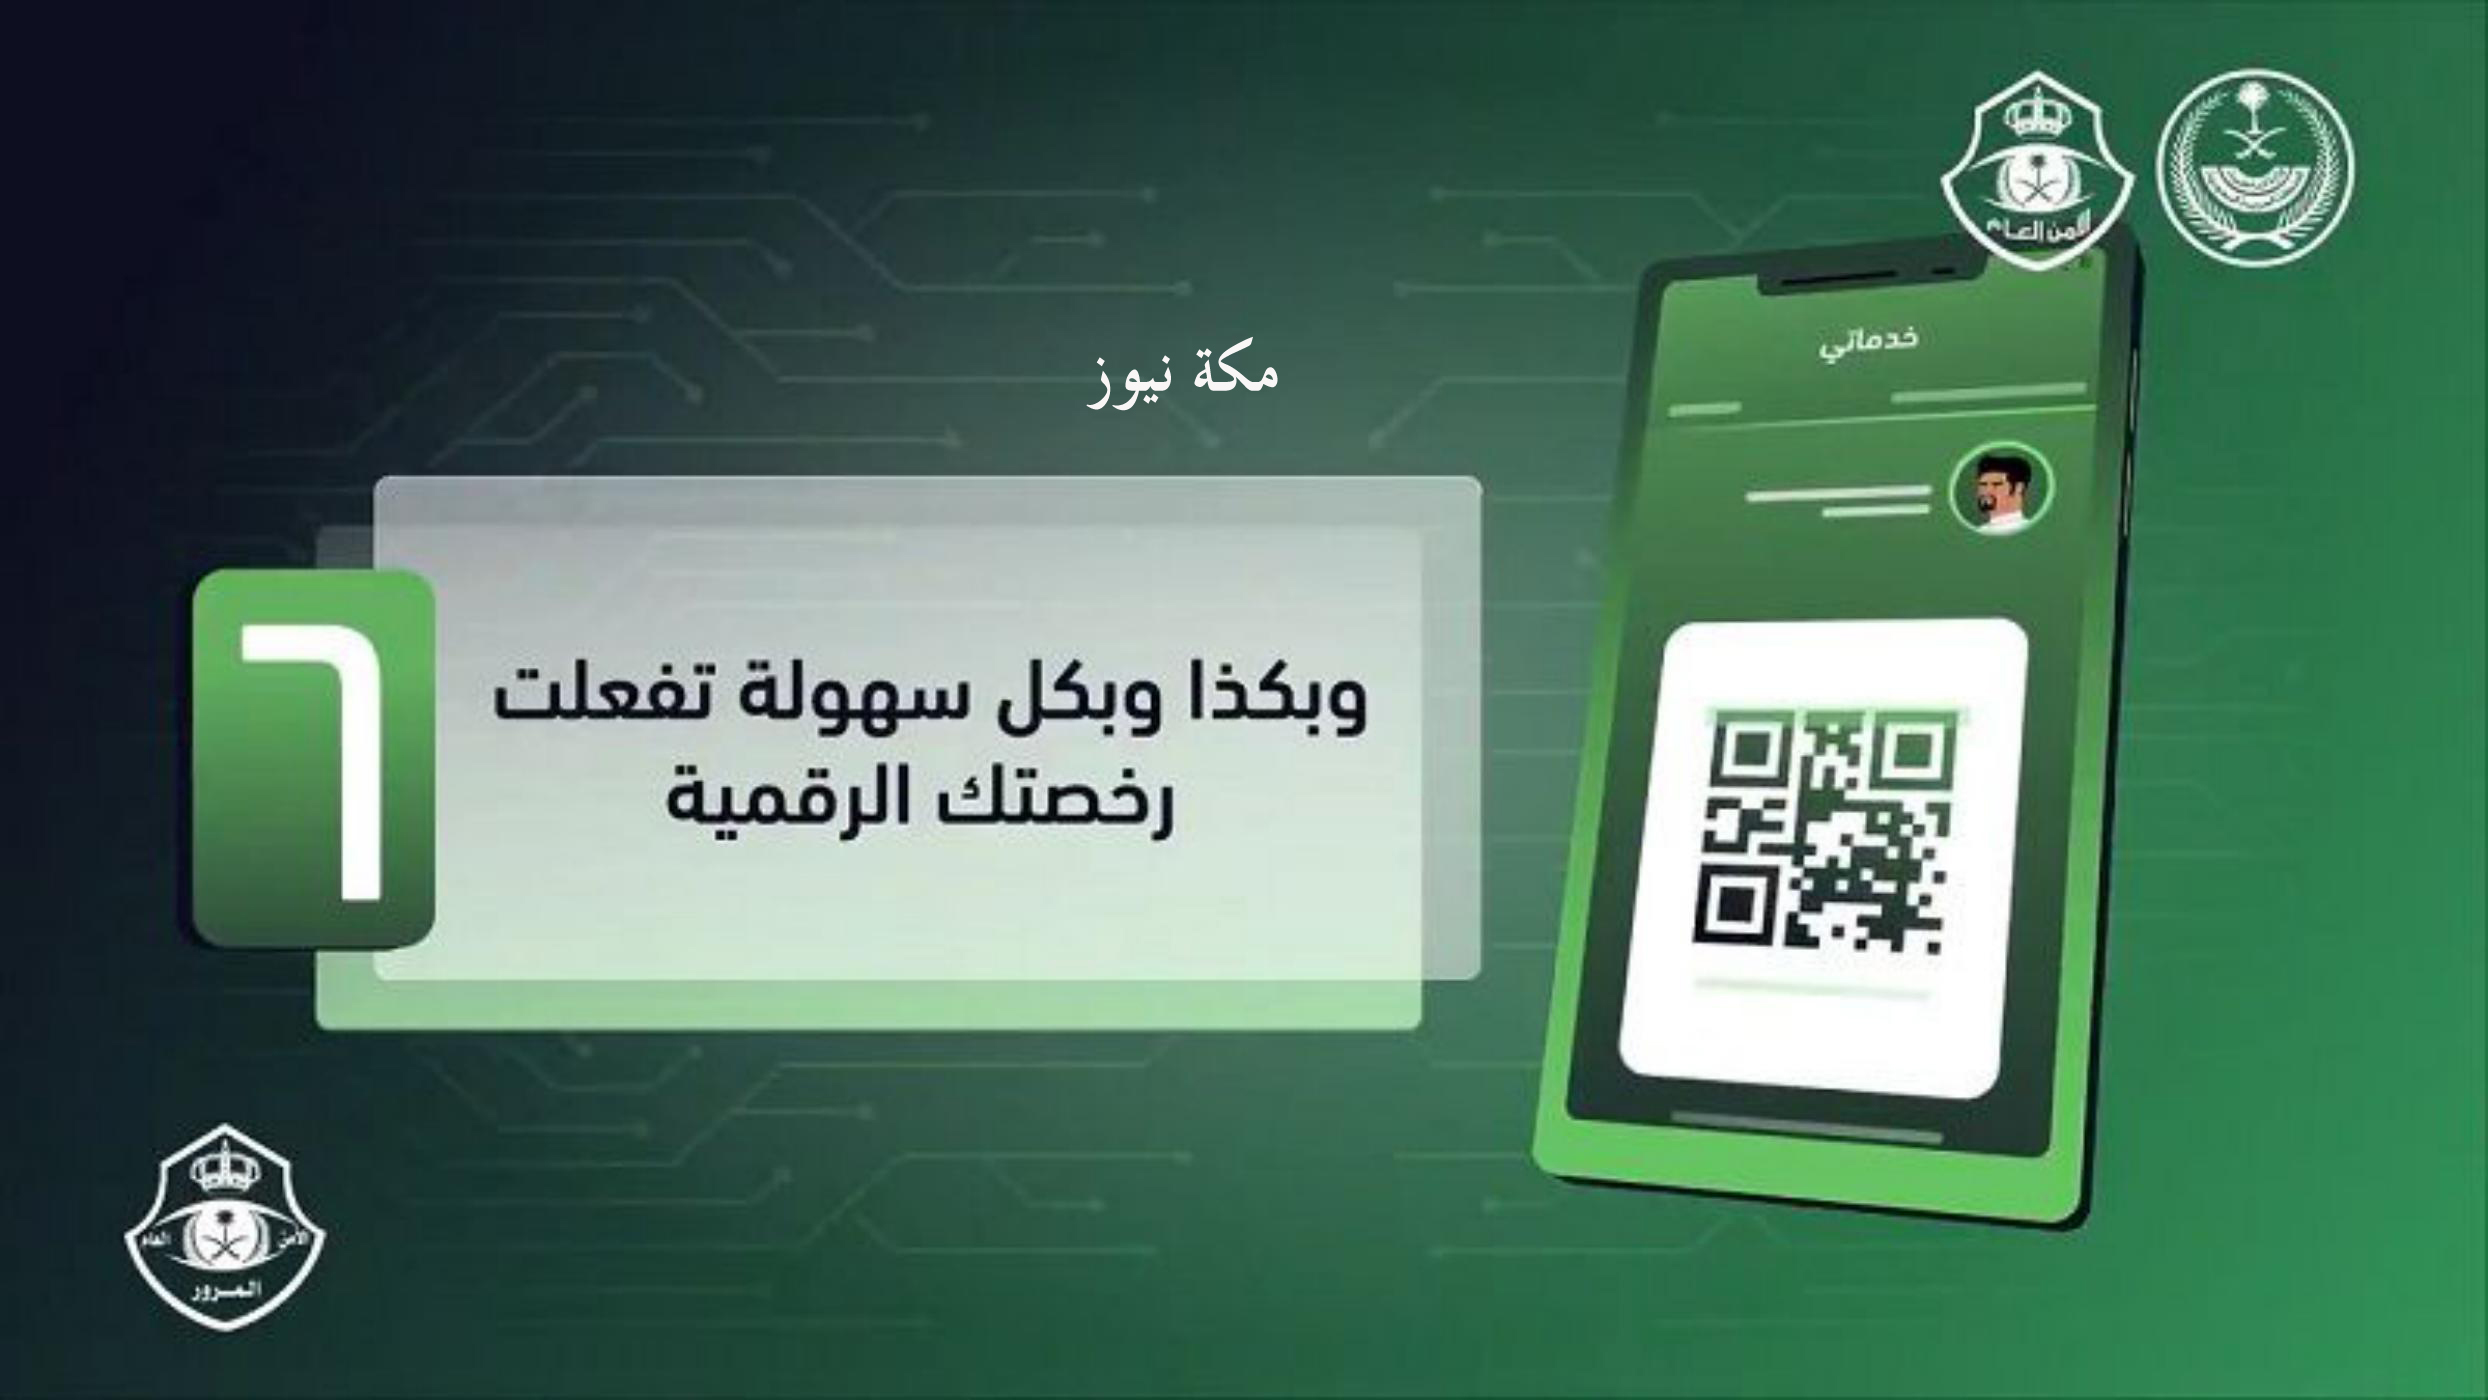 رابط تفعيل رخصة القيادة الرقمية عبر أبشر أفراد بالمرور السعودي